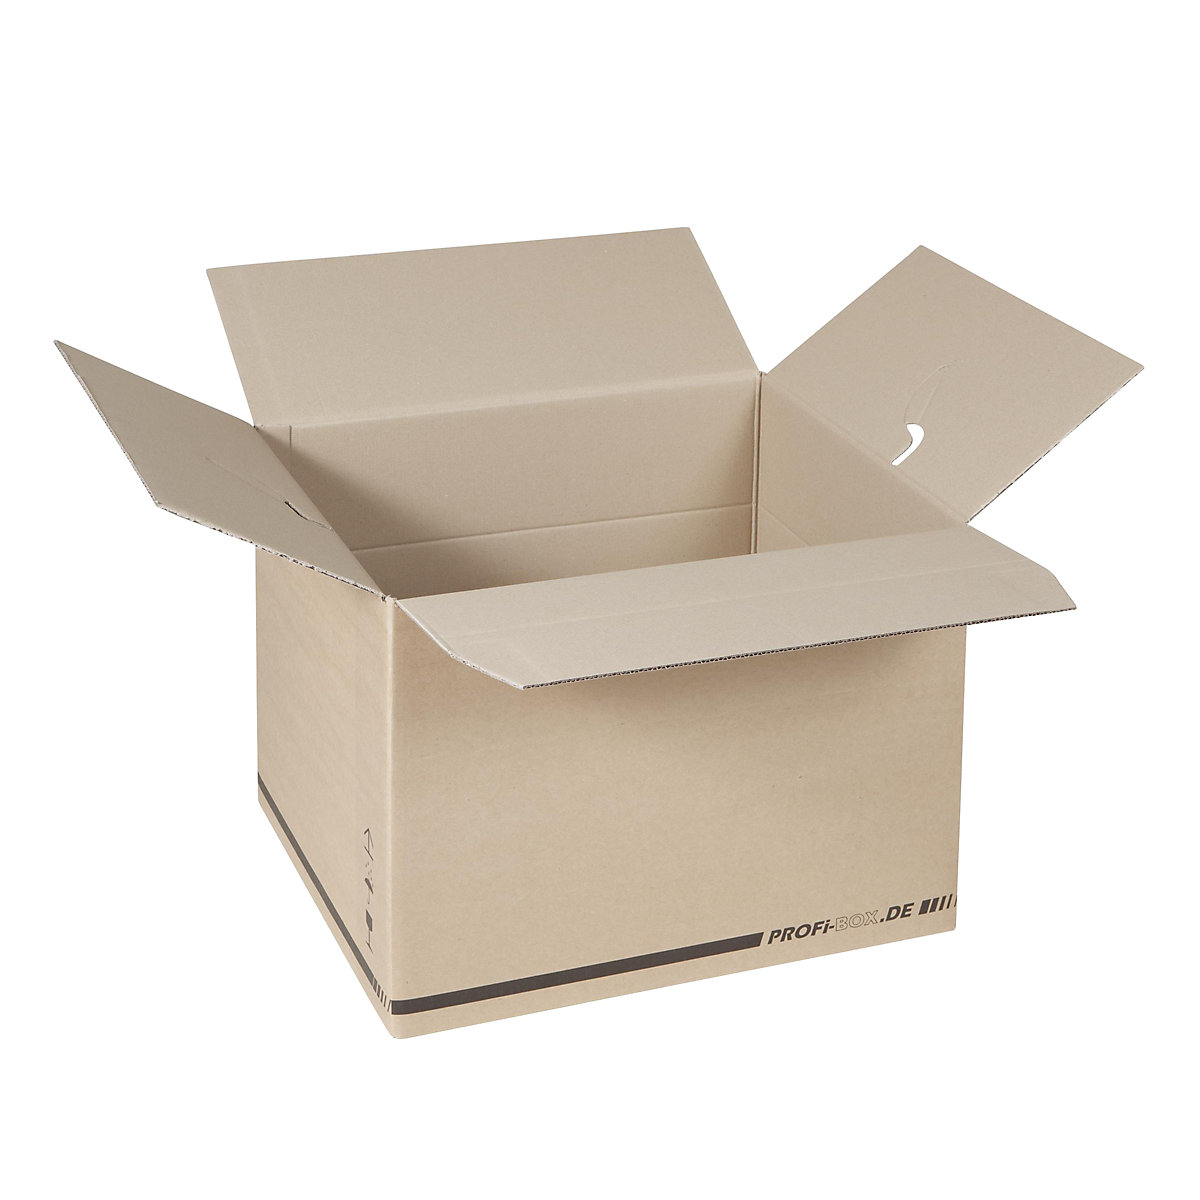 Profesionalne kutije, od 2-valnog kartona, unutarnje dimenzije 476 x 376 x 340 mm, FEFCO 0216, pak. 50 kom.